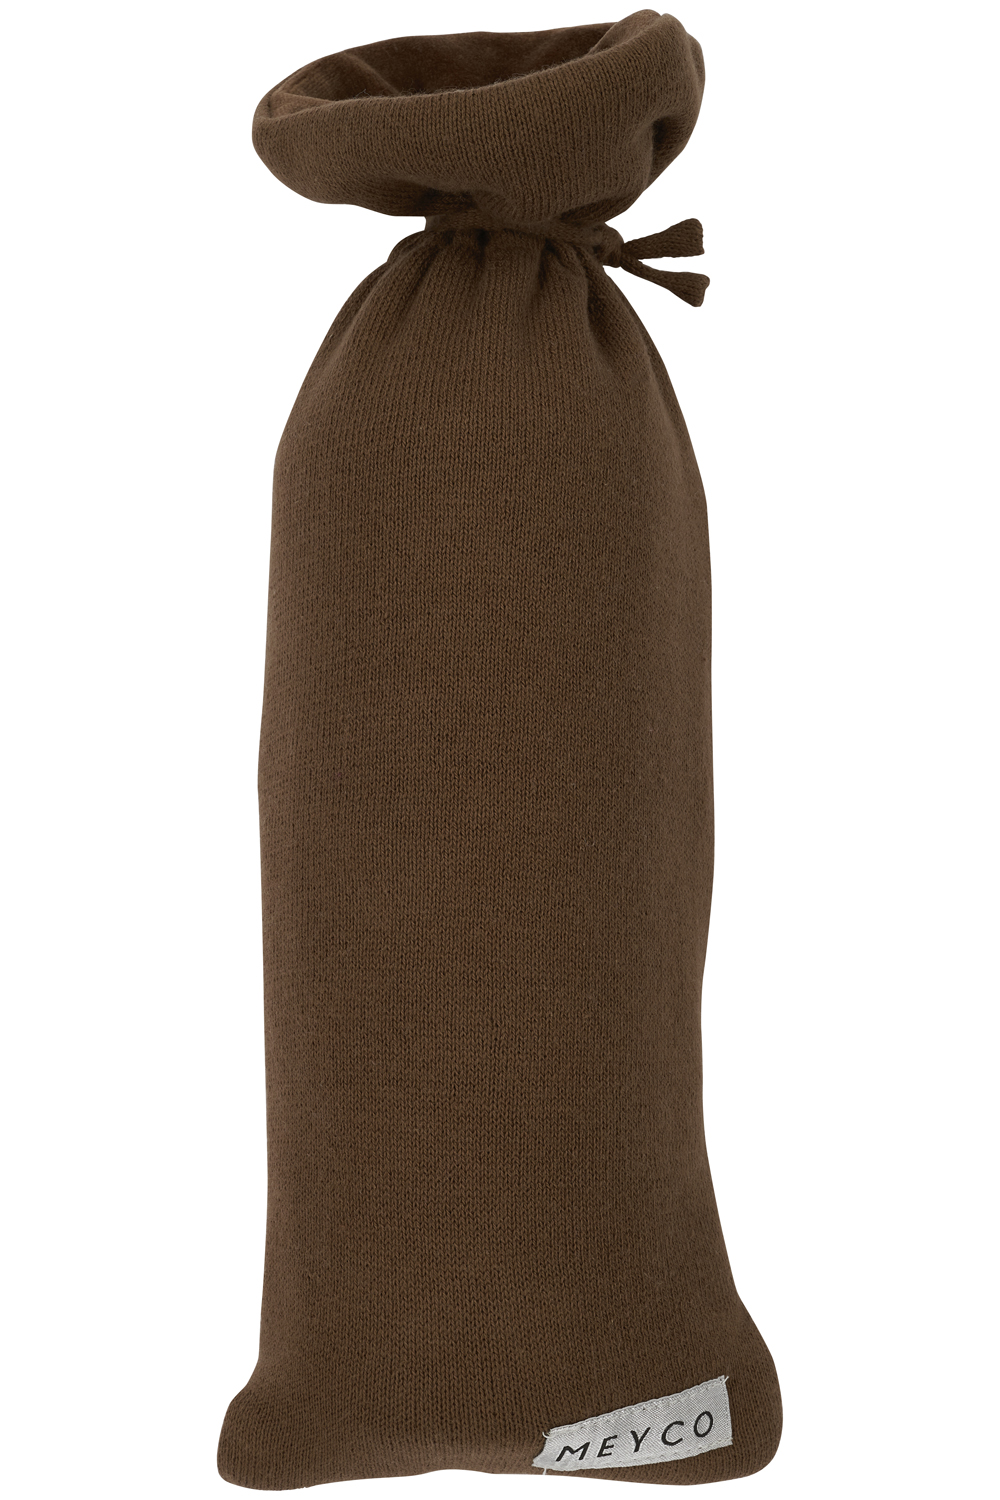 Wärmflaschenbezug Knit Basic - chocolate